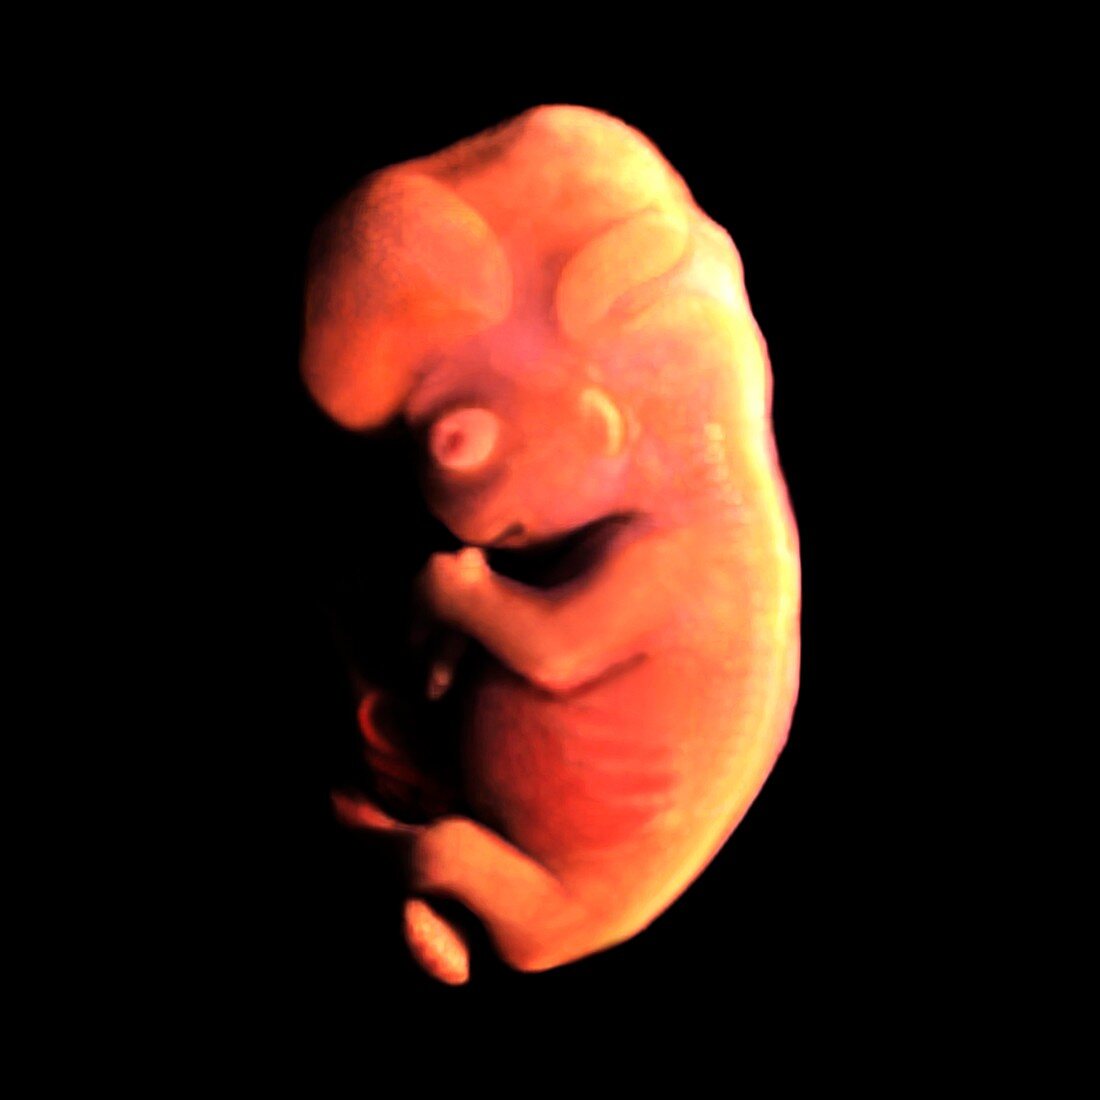 Embryo at 54 days